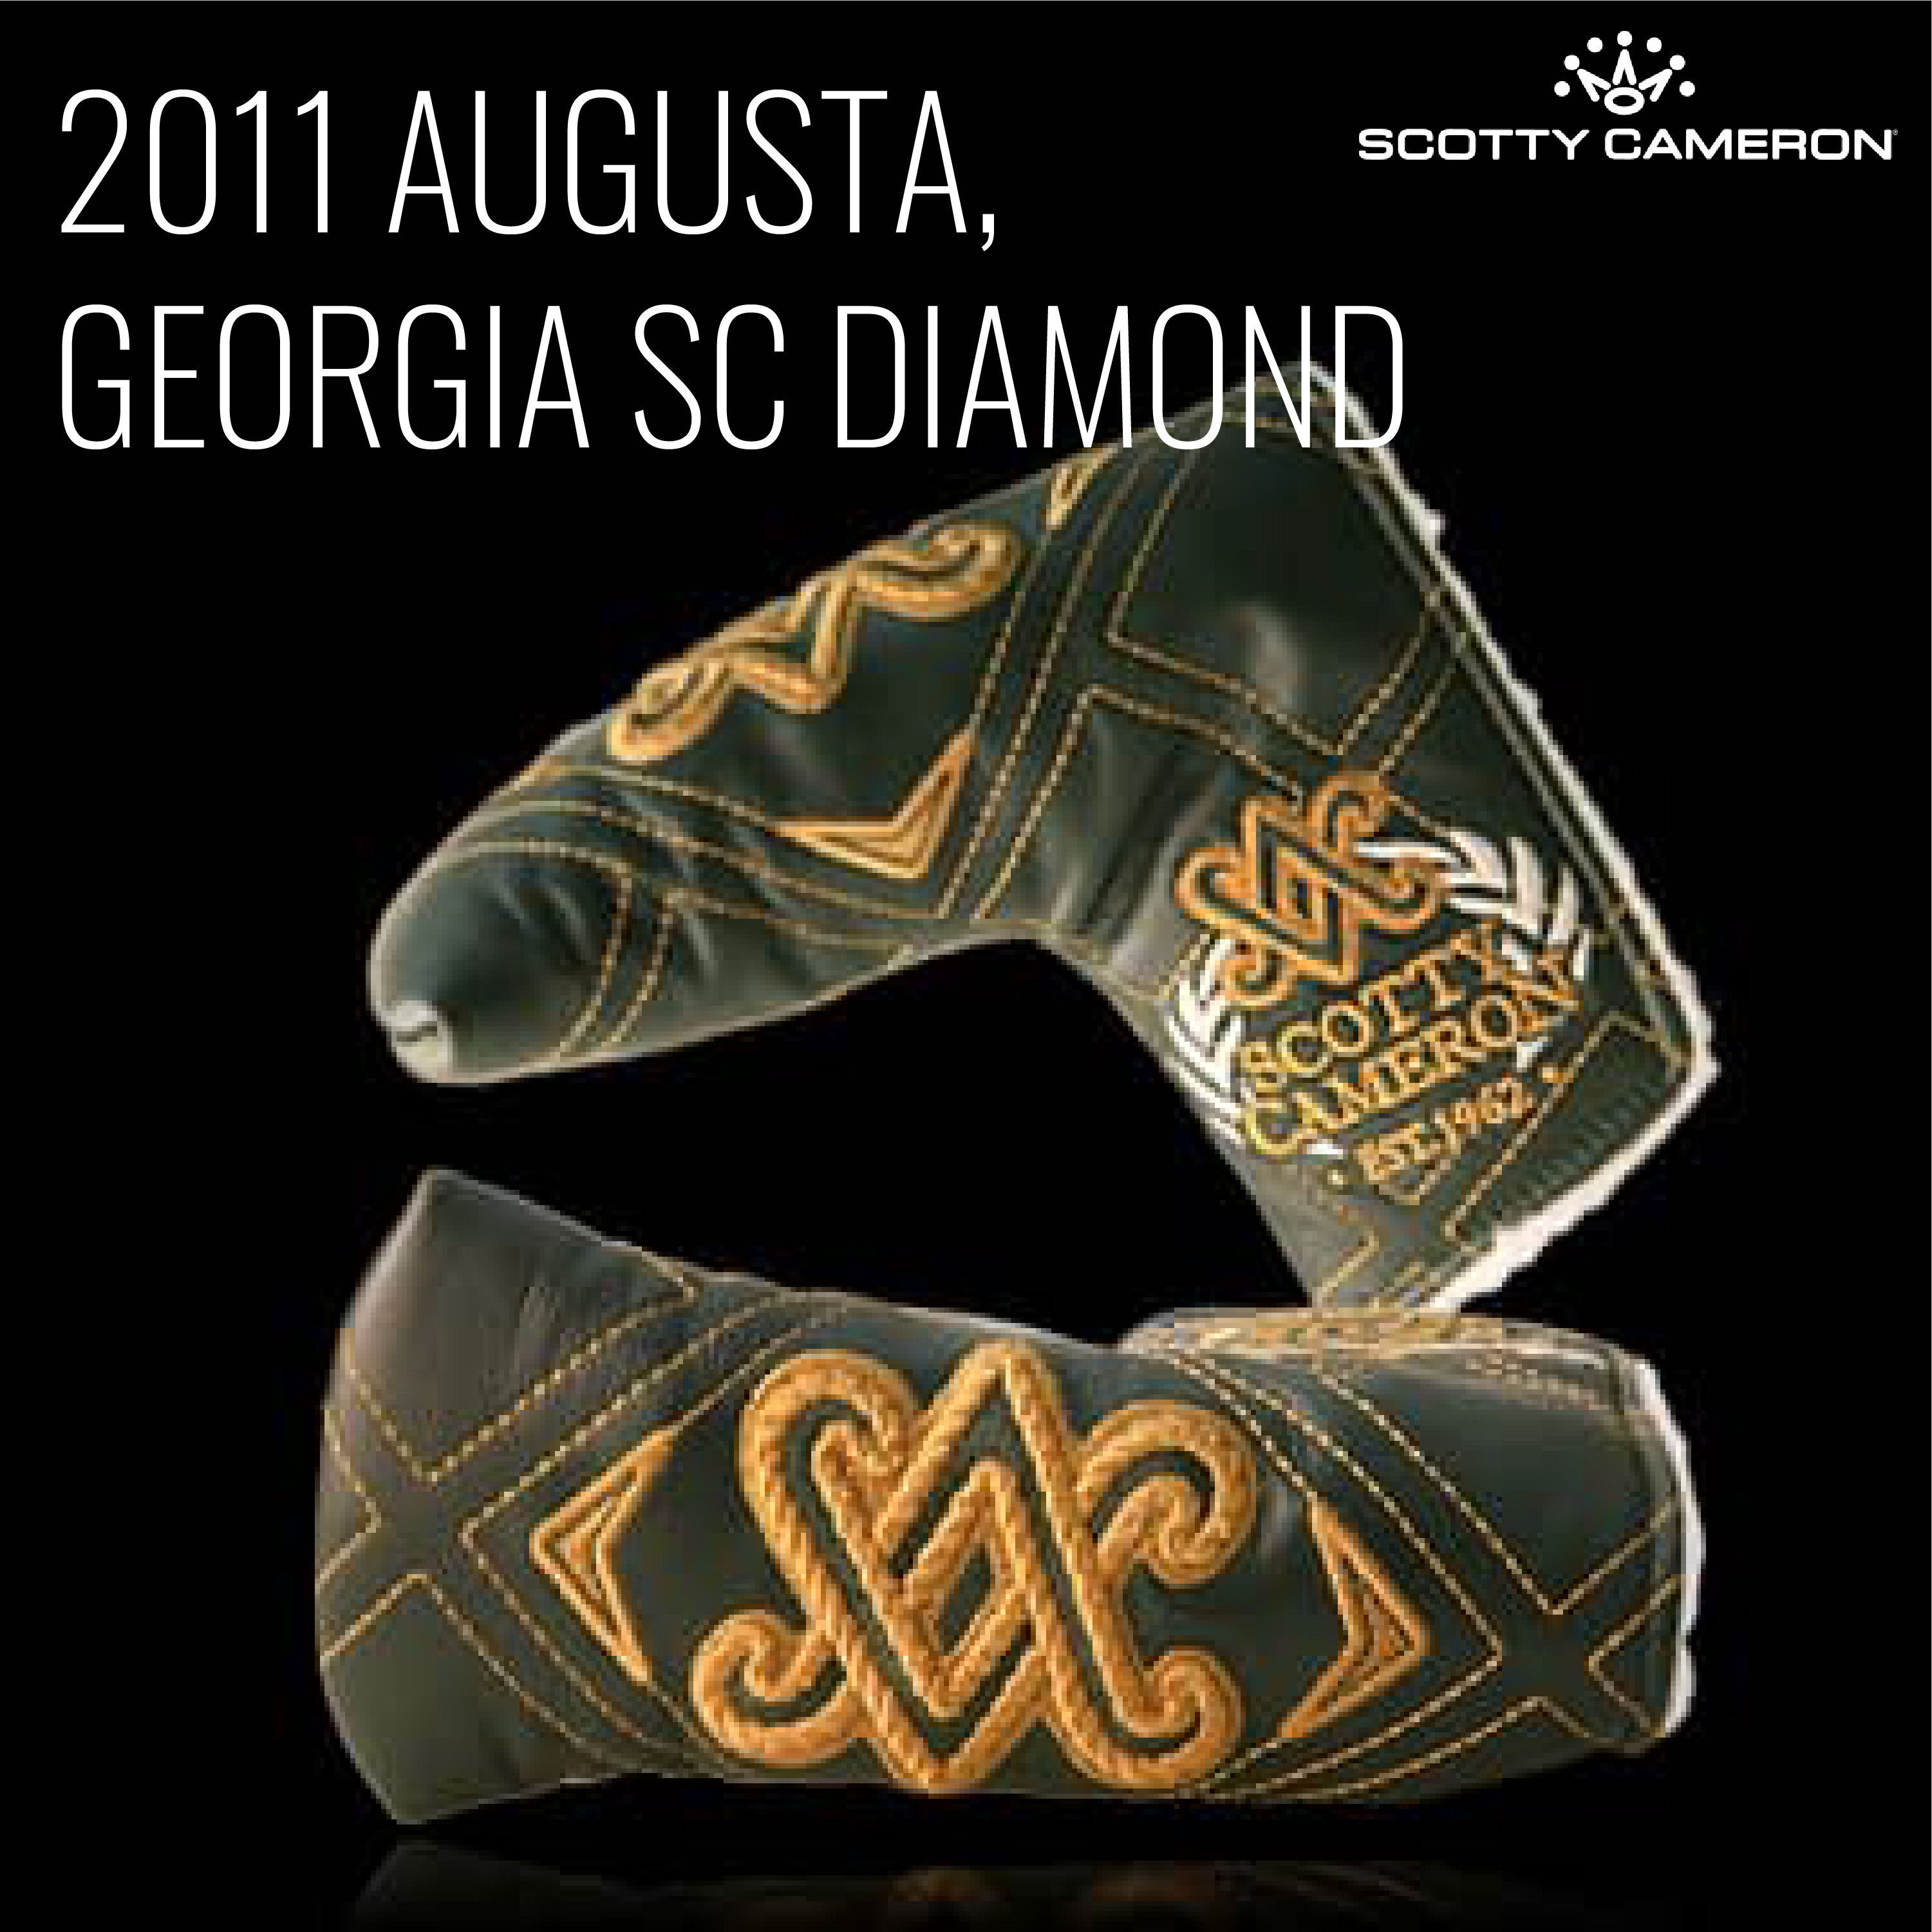 Scotty Cameron 2011 Augusta Georgia SC Diamond